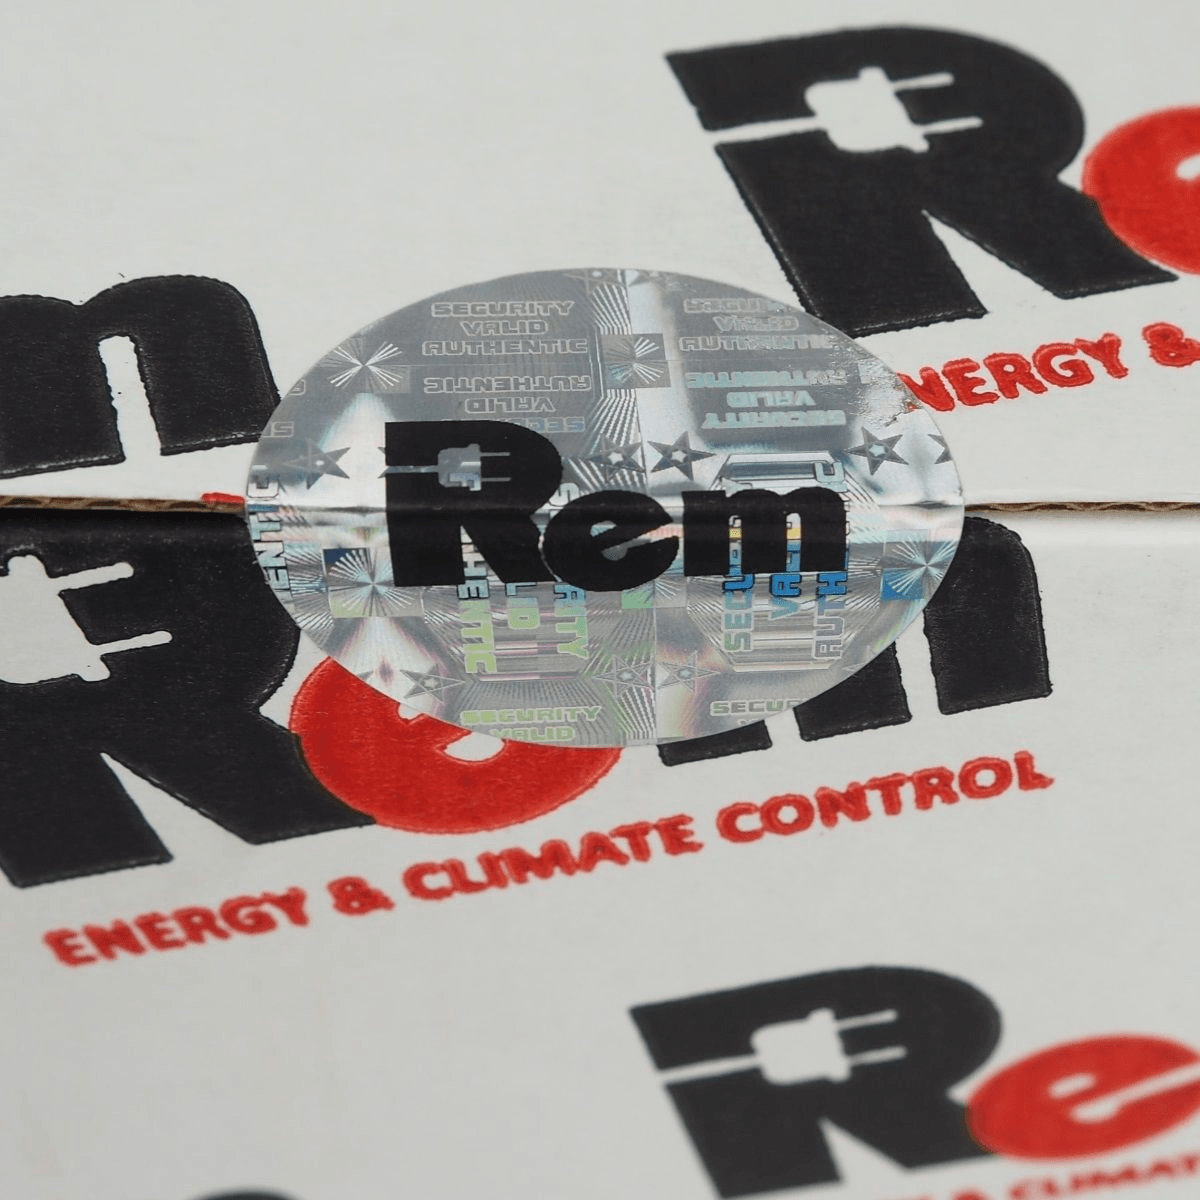 Блок розеток Rem-16 с авт. 16А, 6 IEC 60320 C19, 16A, алюм., 19", шнур 3 м. от ЦМО